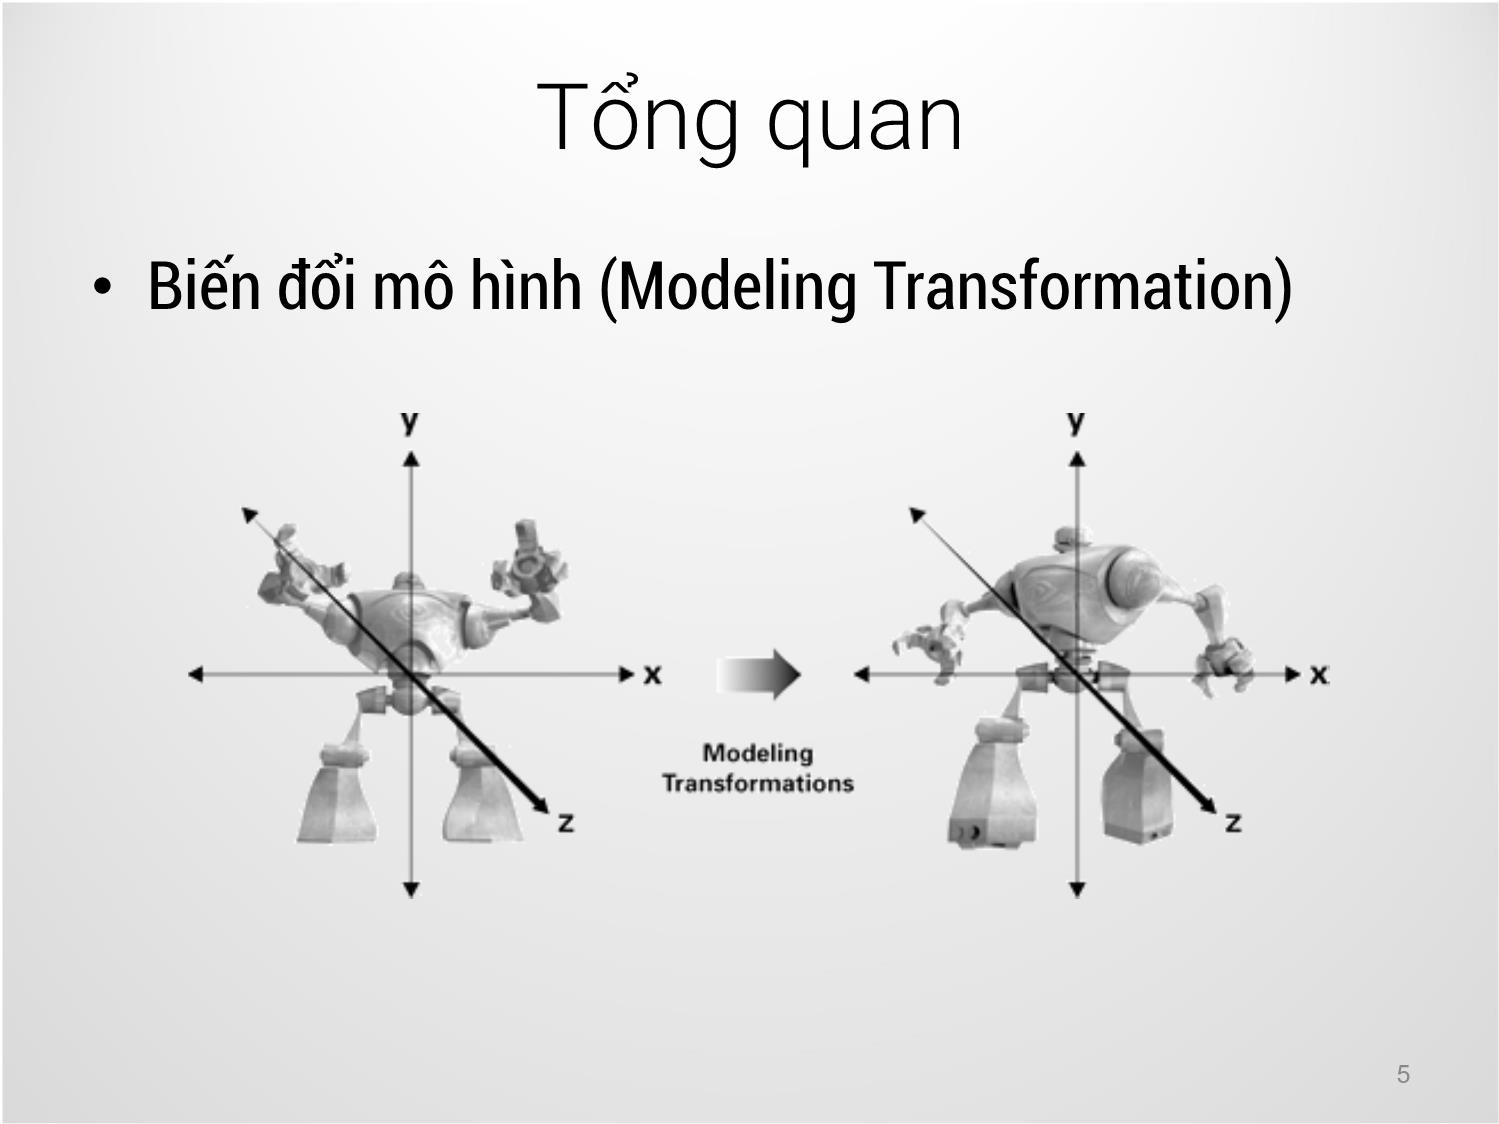 Bài giảng Công nghệ đồ họa và hiện thực - Bài 5: Các phép biến đổi mô hình - Trịnh Thành Trung trang 5